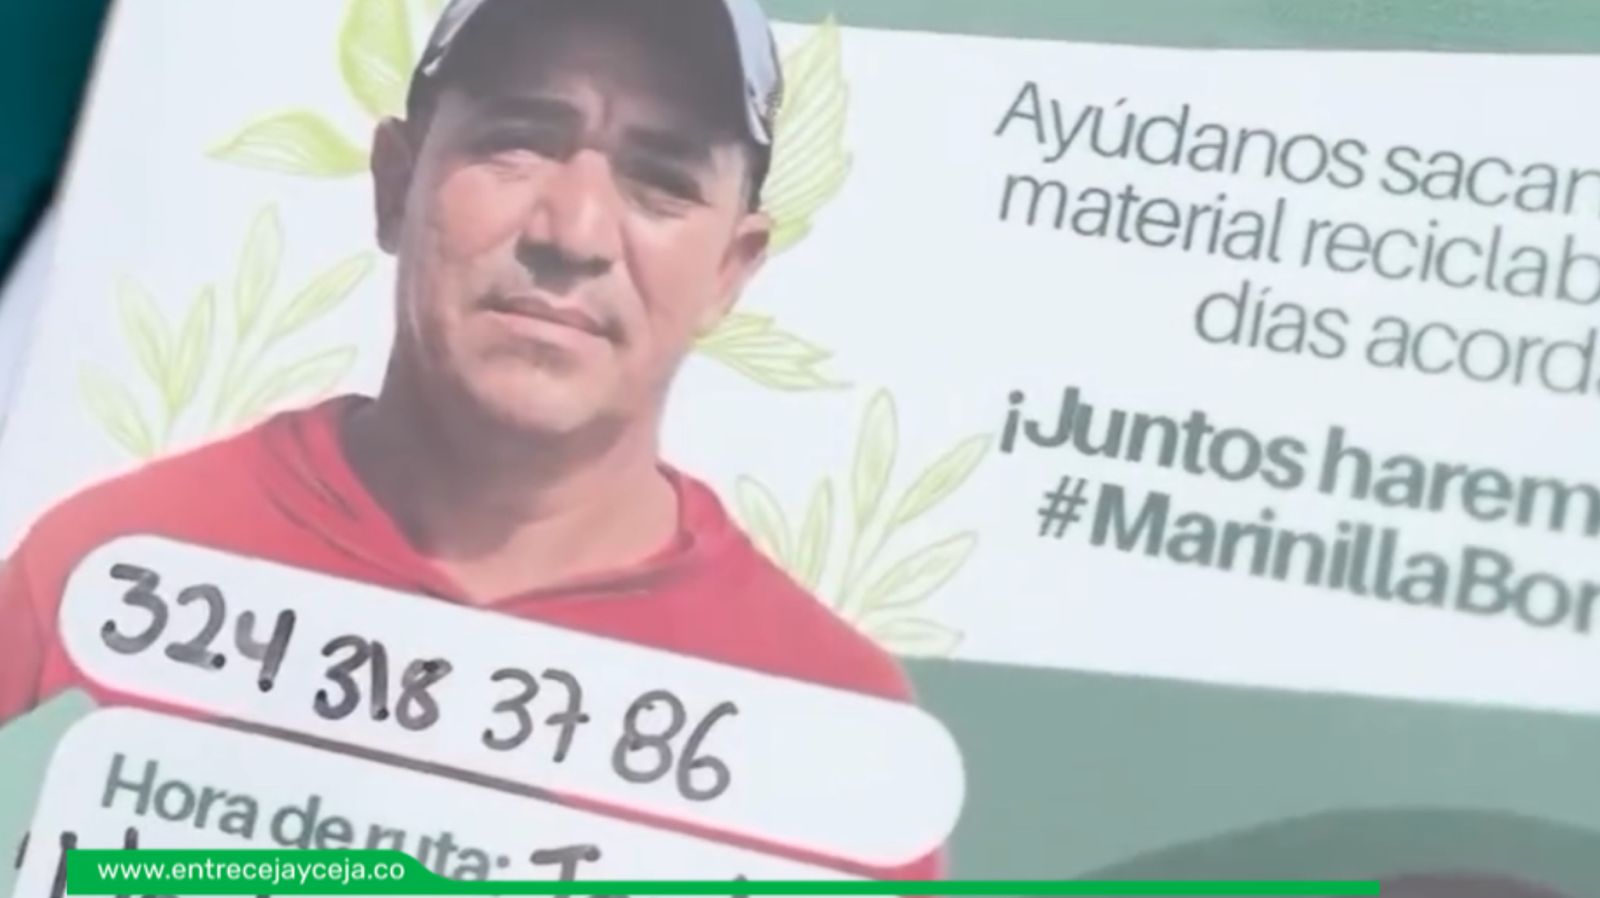 La estrategia en Marinilla que invita a la comunidad a apoyar a los recicladores locales